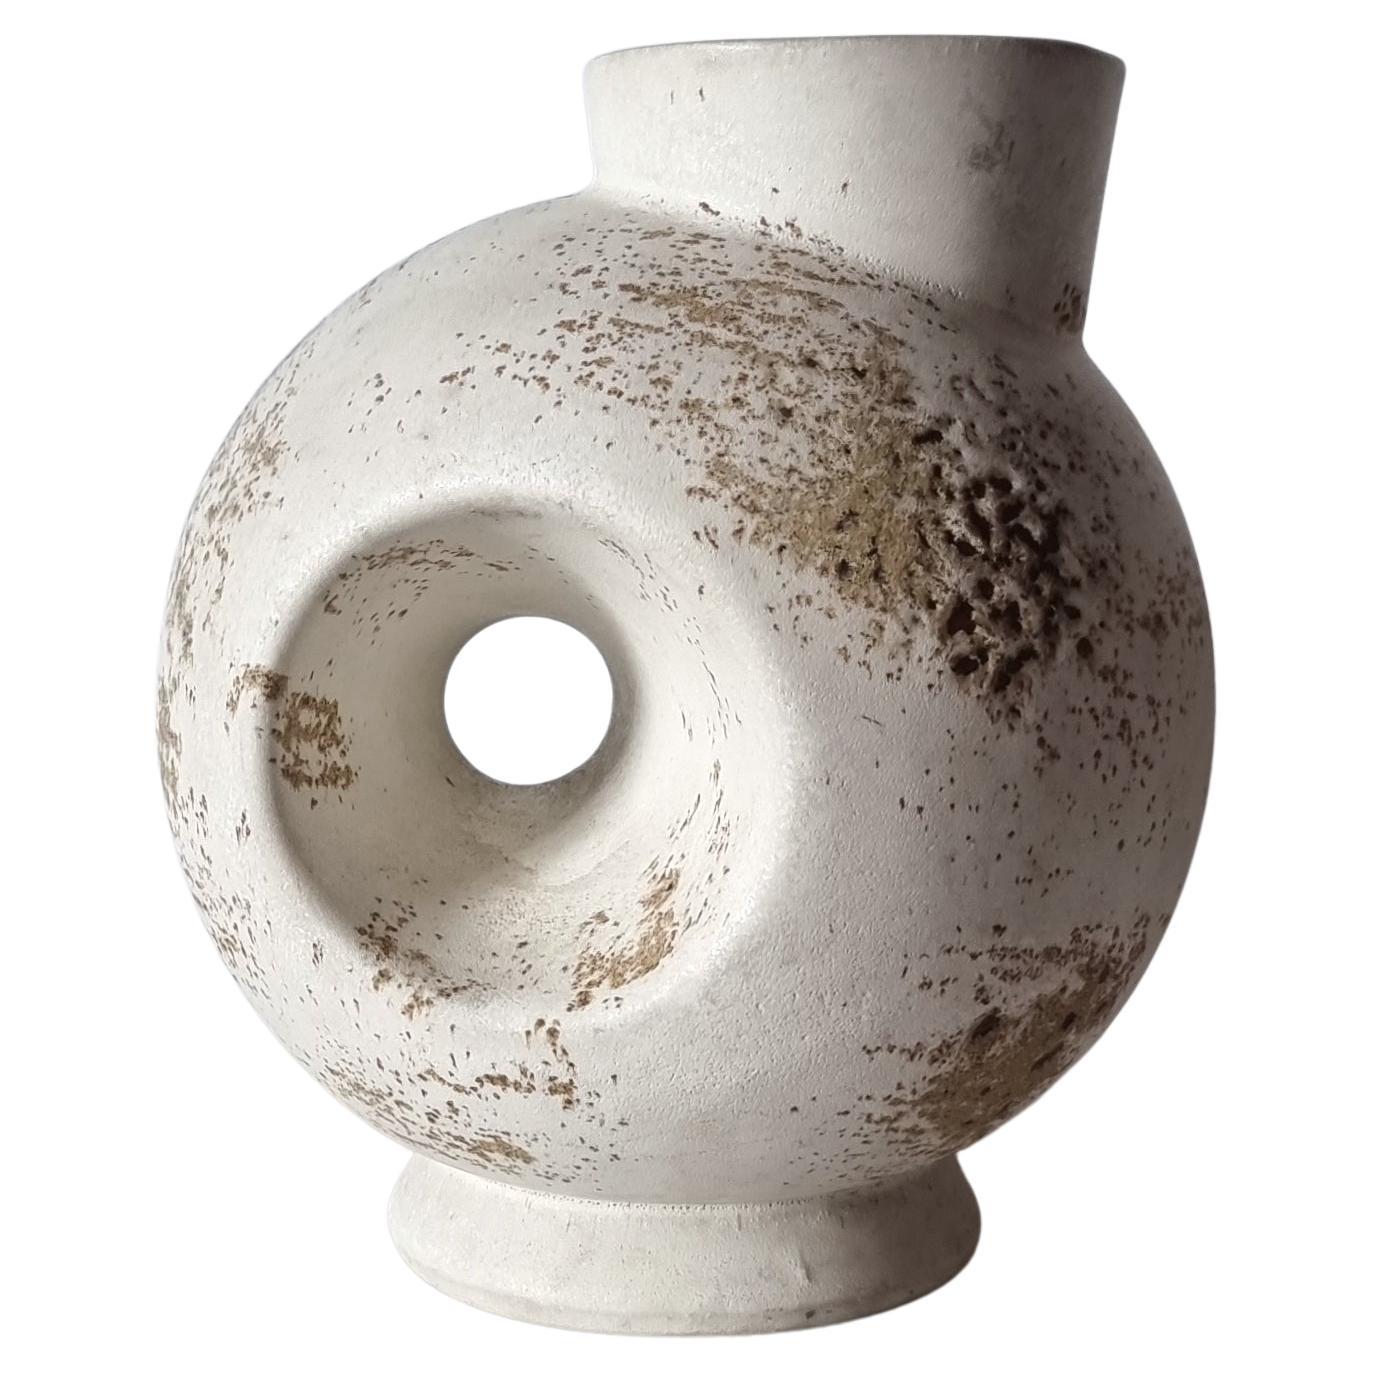 Duif Keramiek Sculptural Globe, Statement Jug Vase, Nutmeg Speckled Cream Glaze For Sale